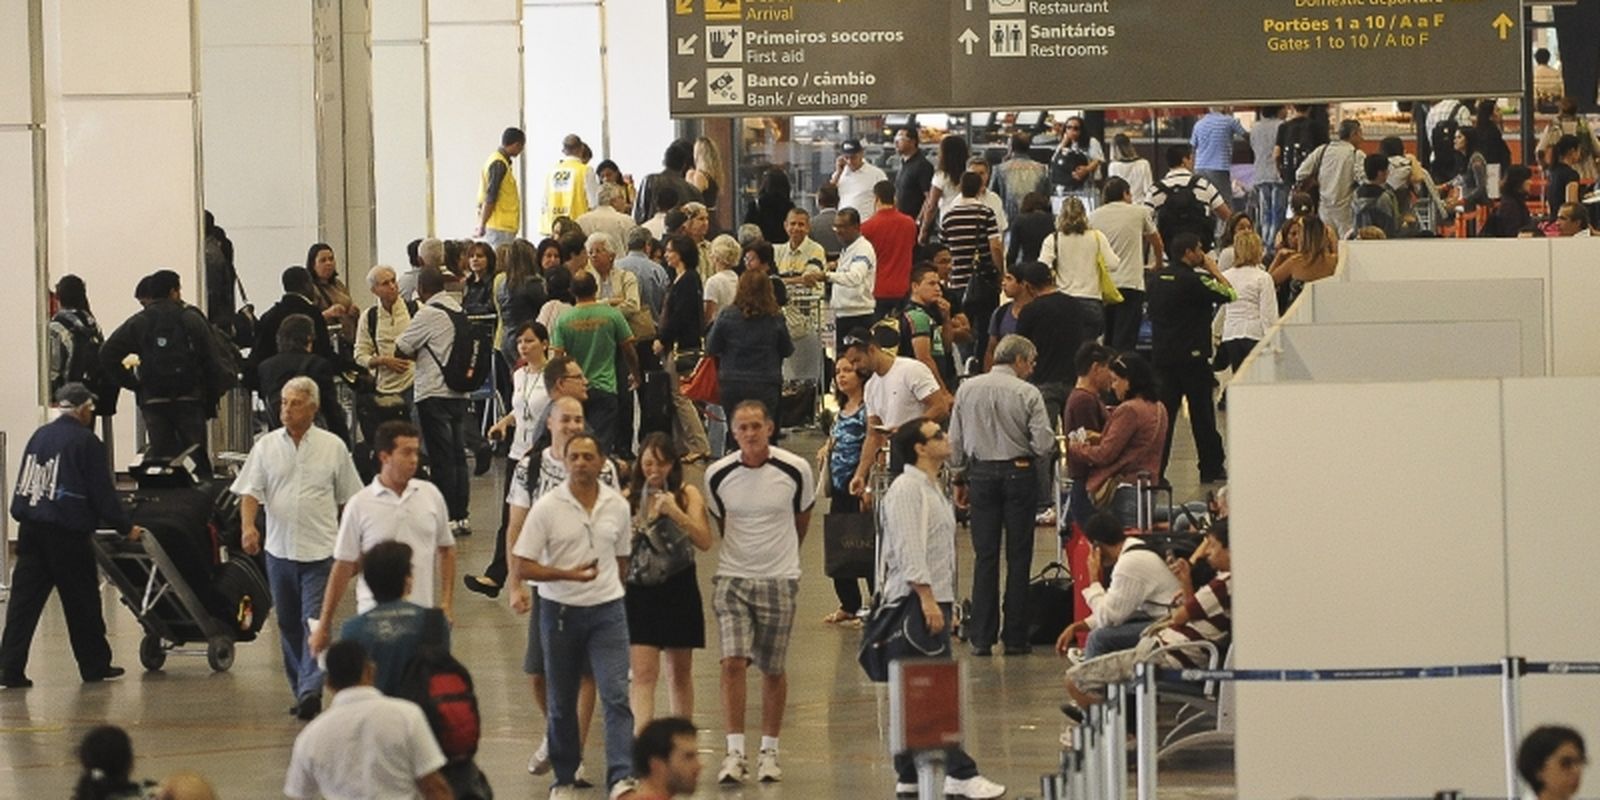 Poucas pessoas negras e barreiras explicitam racismo em aeroportos